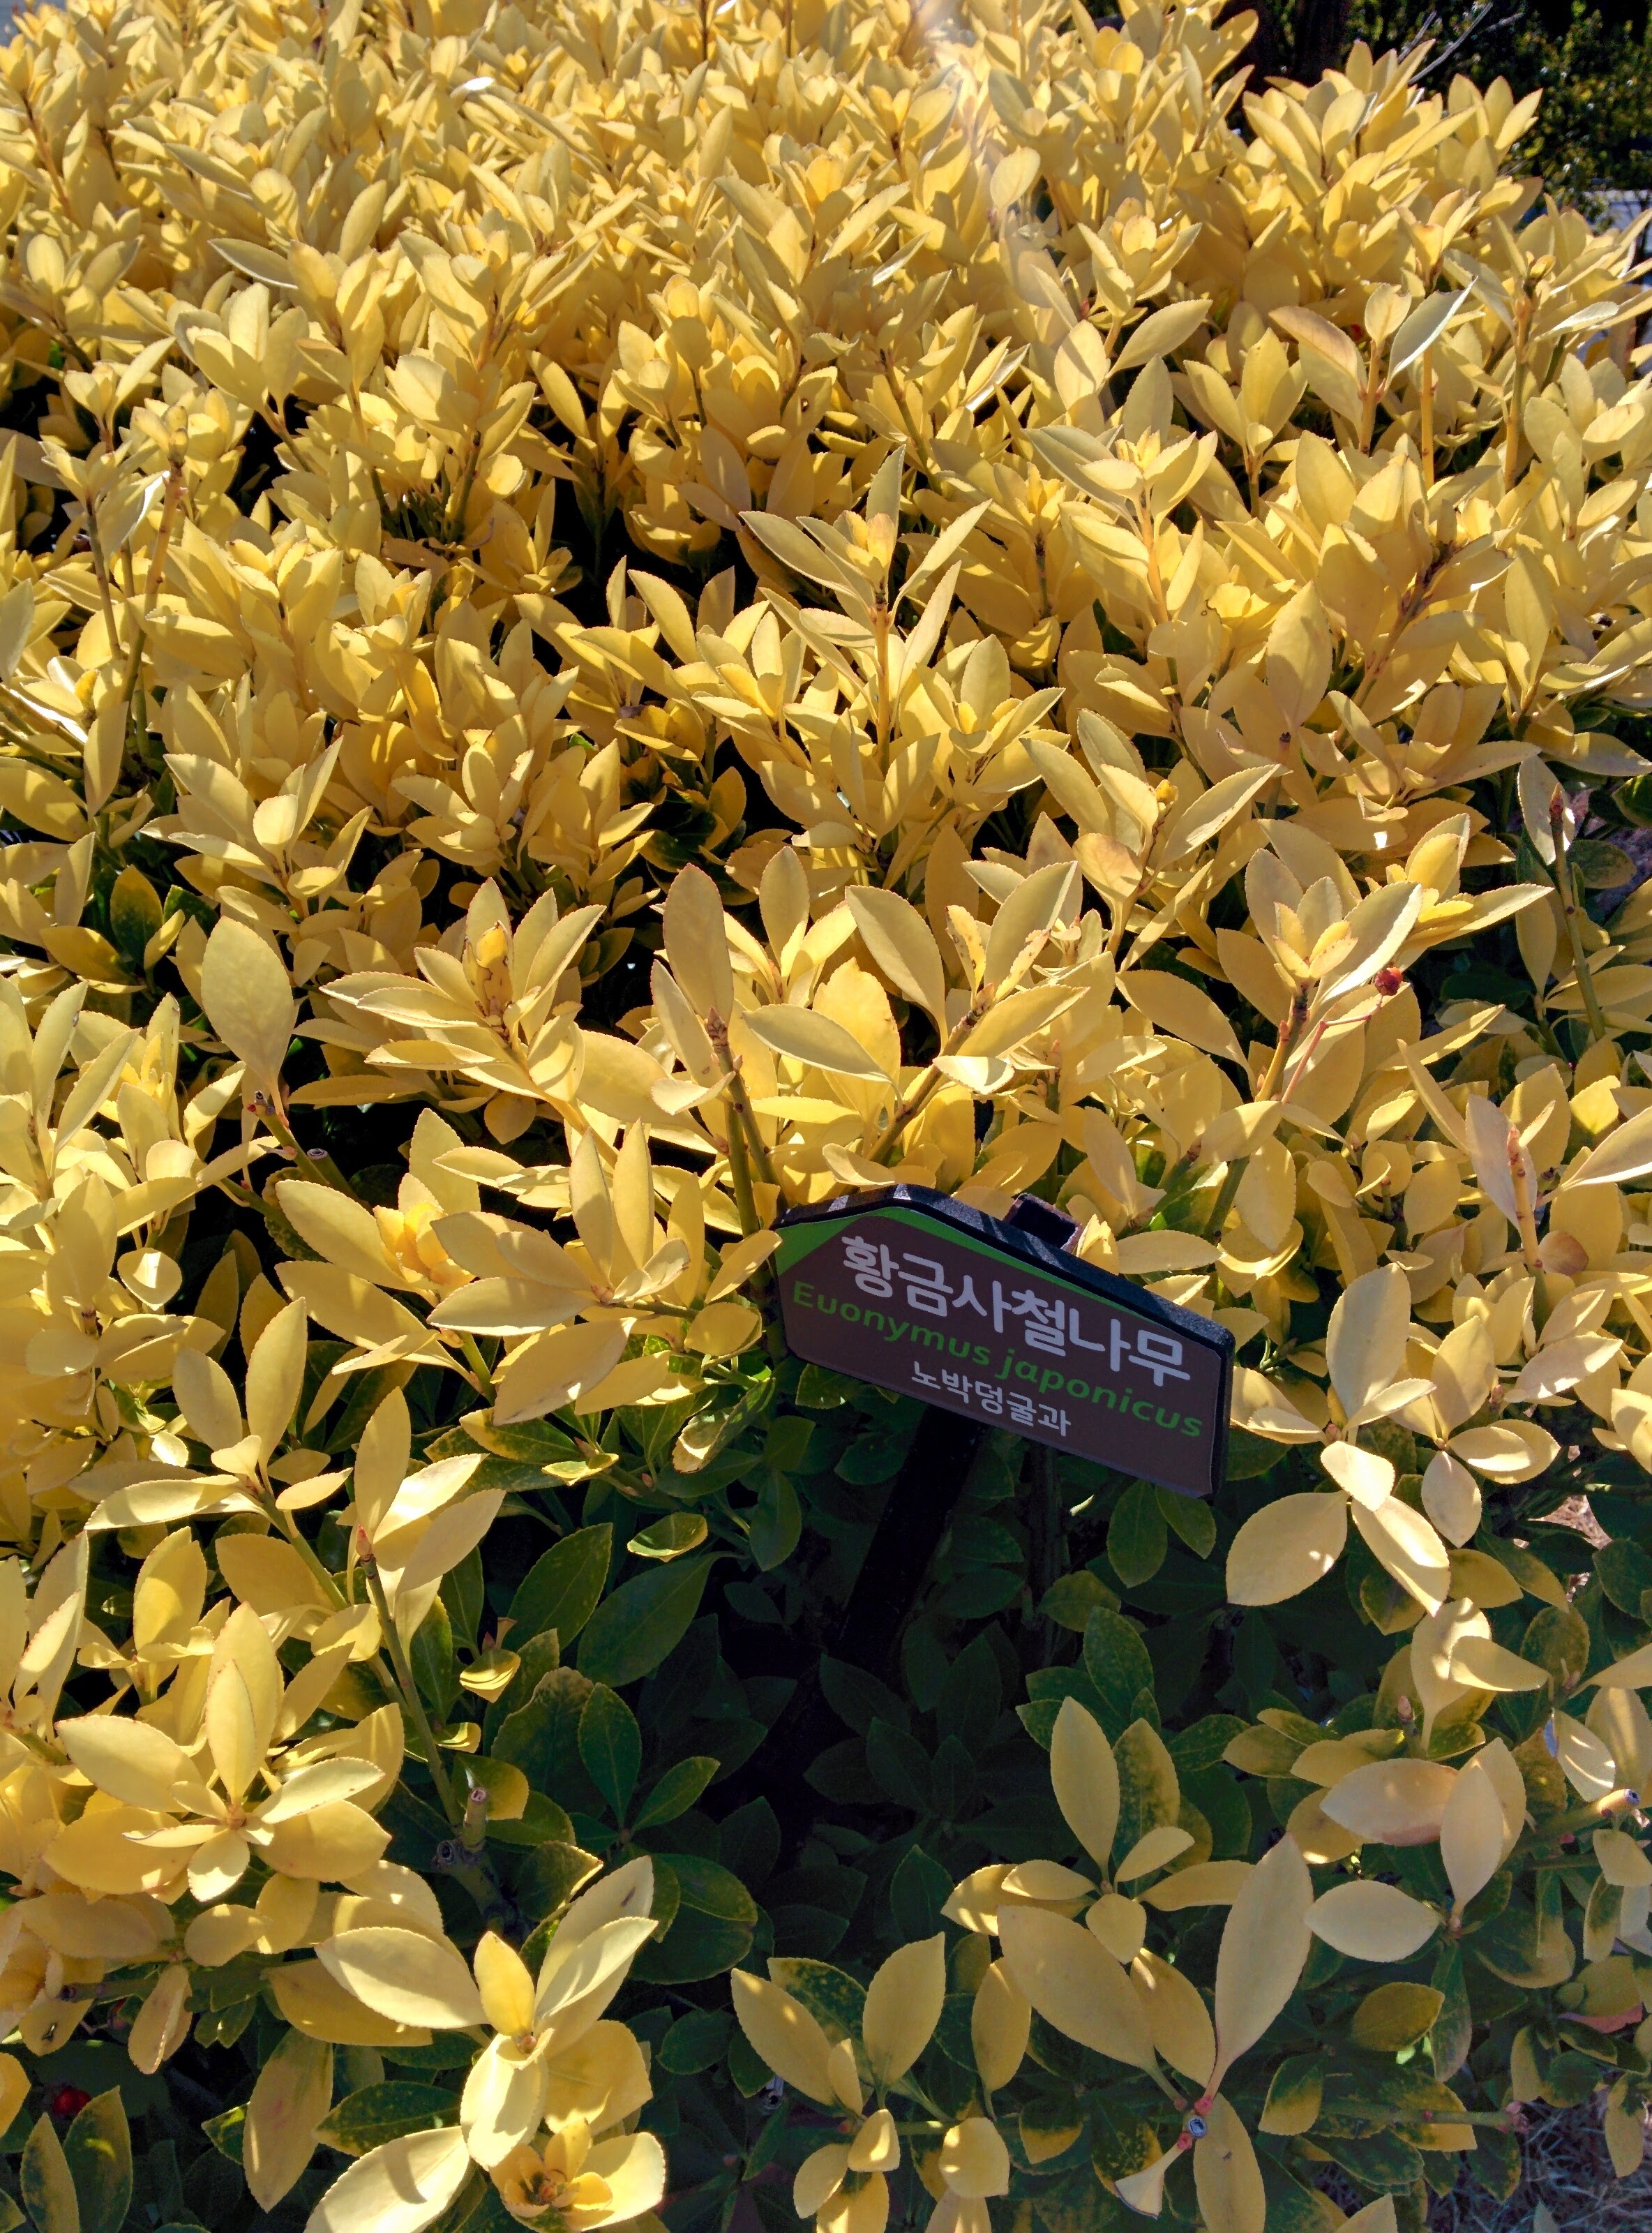 IMG_20151228_135210.jpg 노란색으로 잎이 물든 황금사철나무